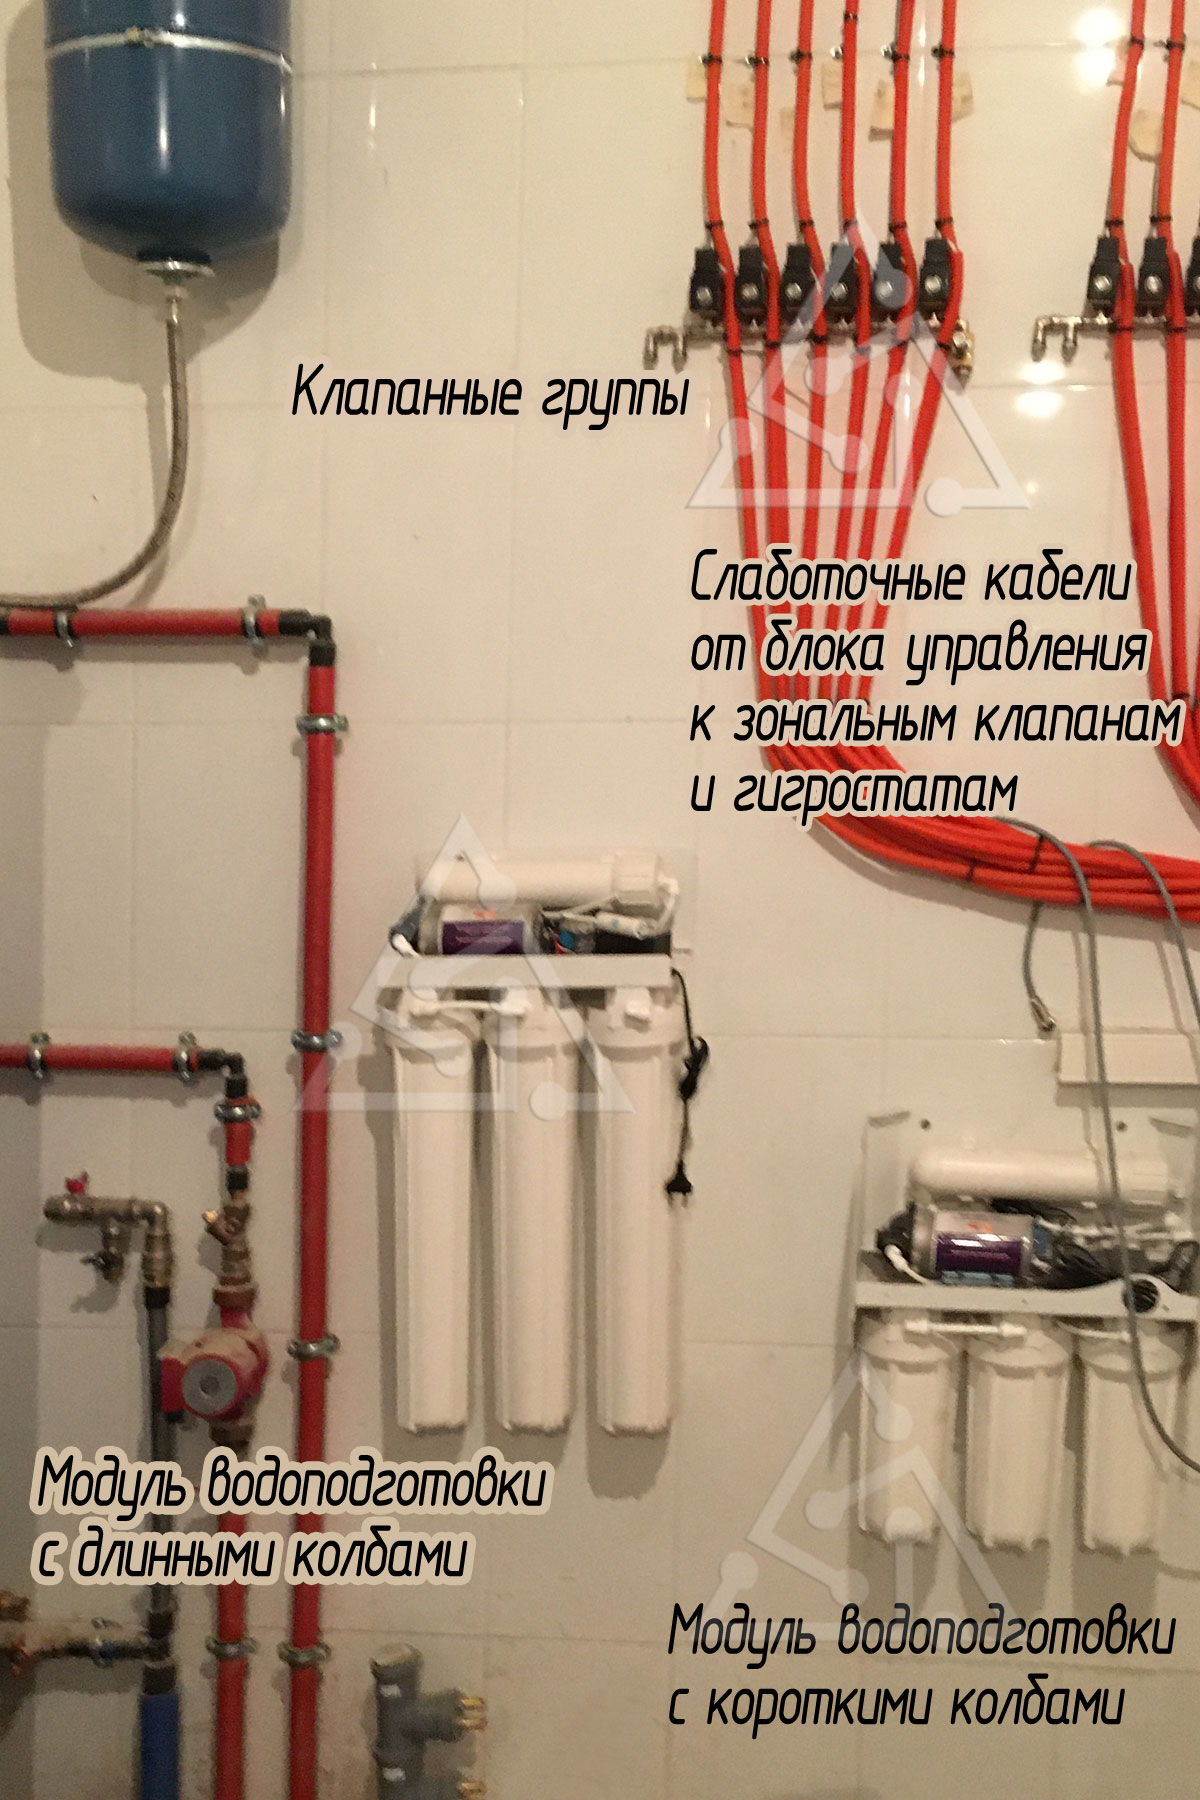 Фото модулей водоподготовки, клапанных групп, слаботочных кабелей для управления системой форсуночного увлажнения